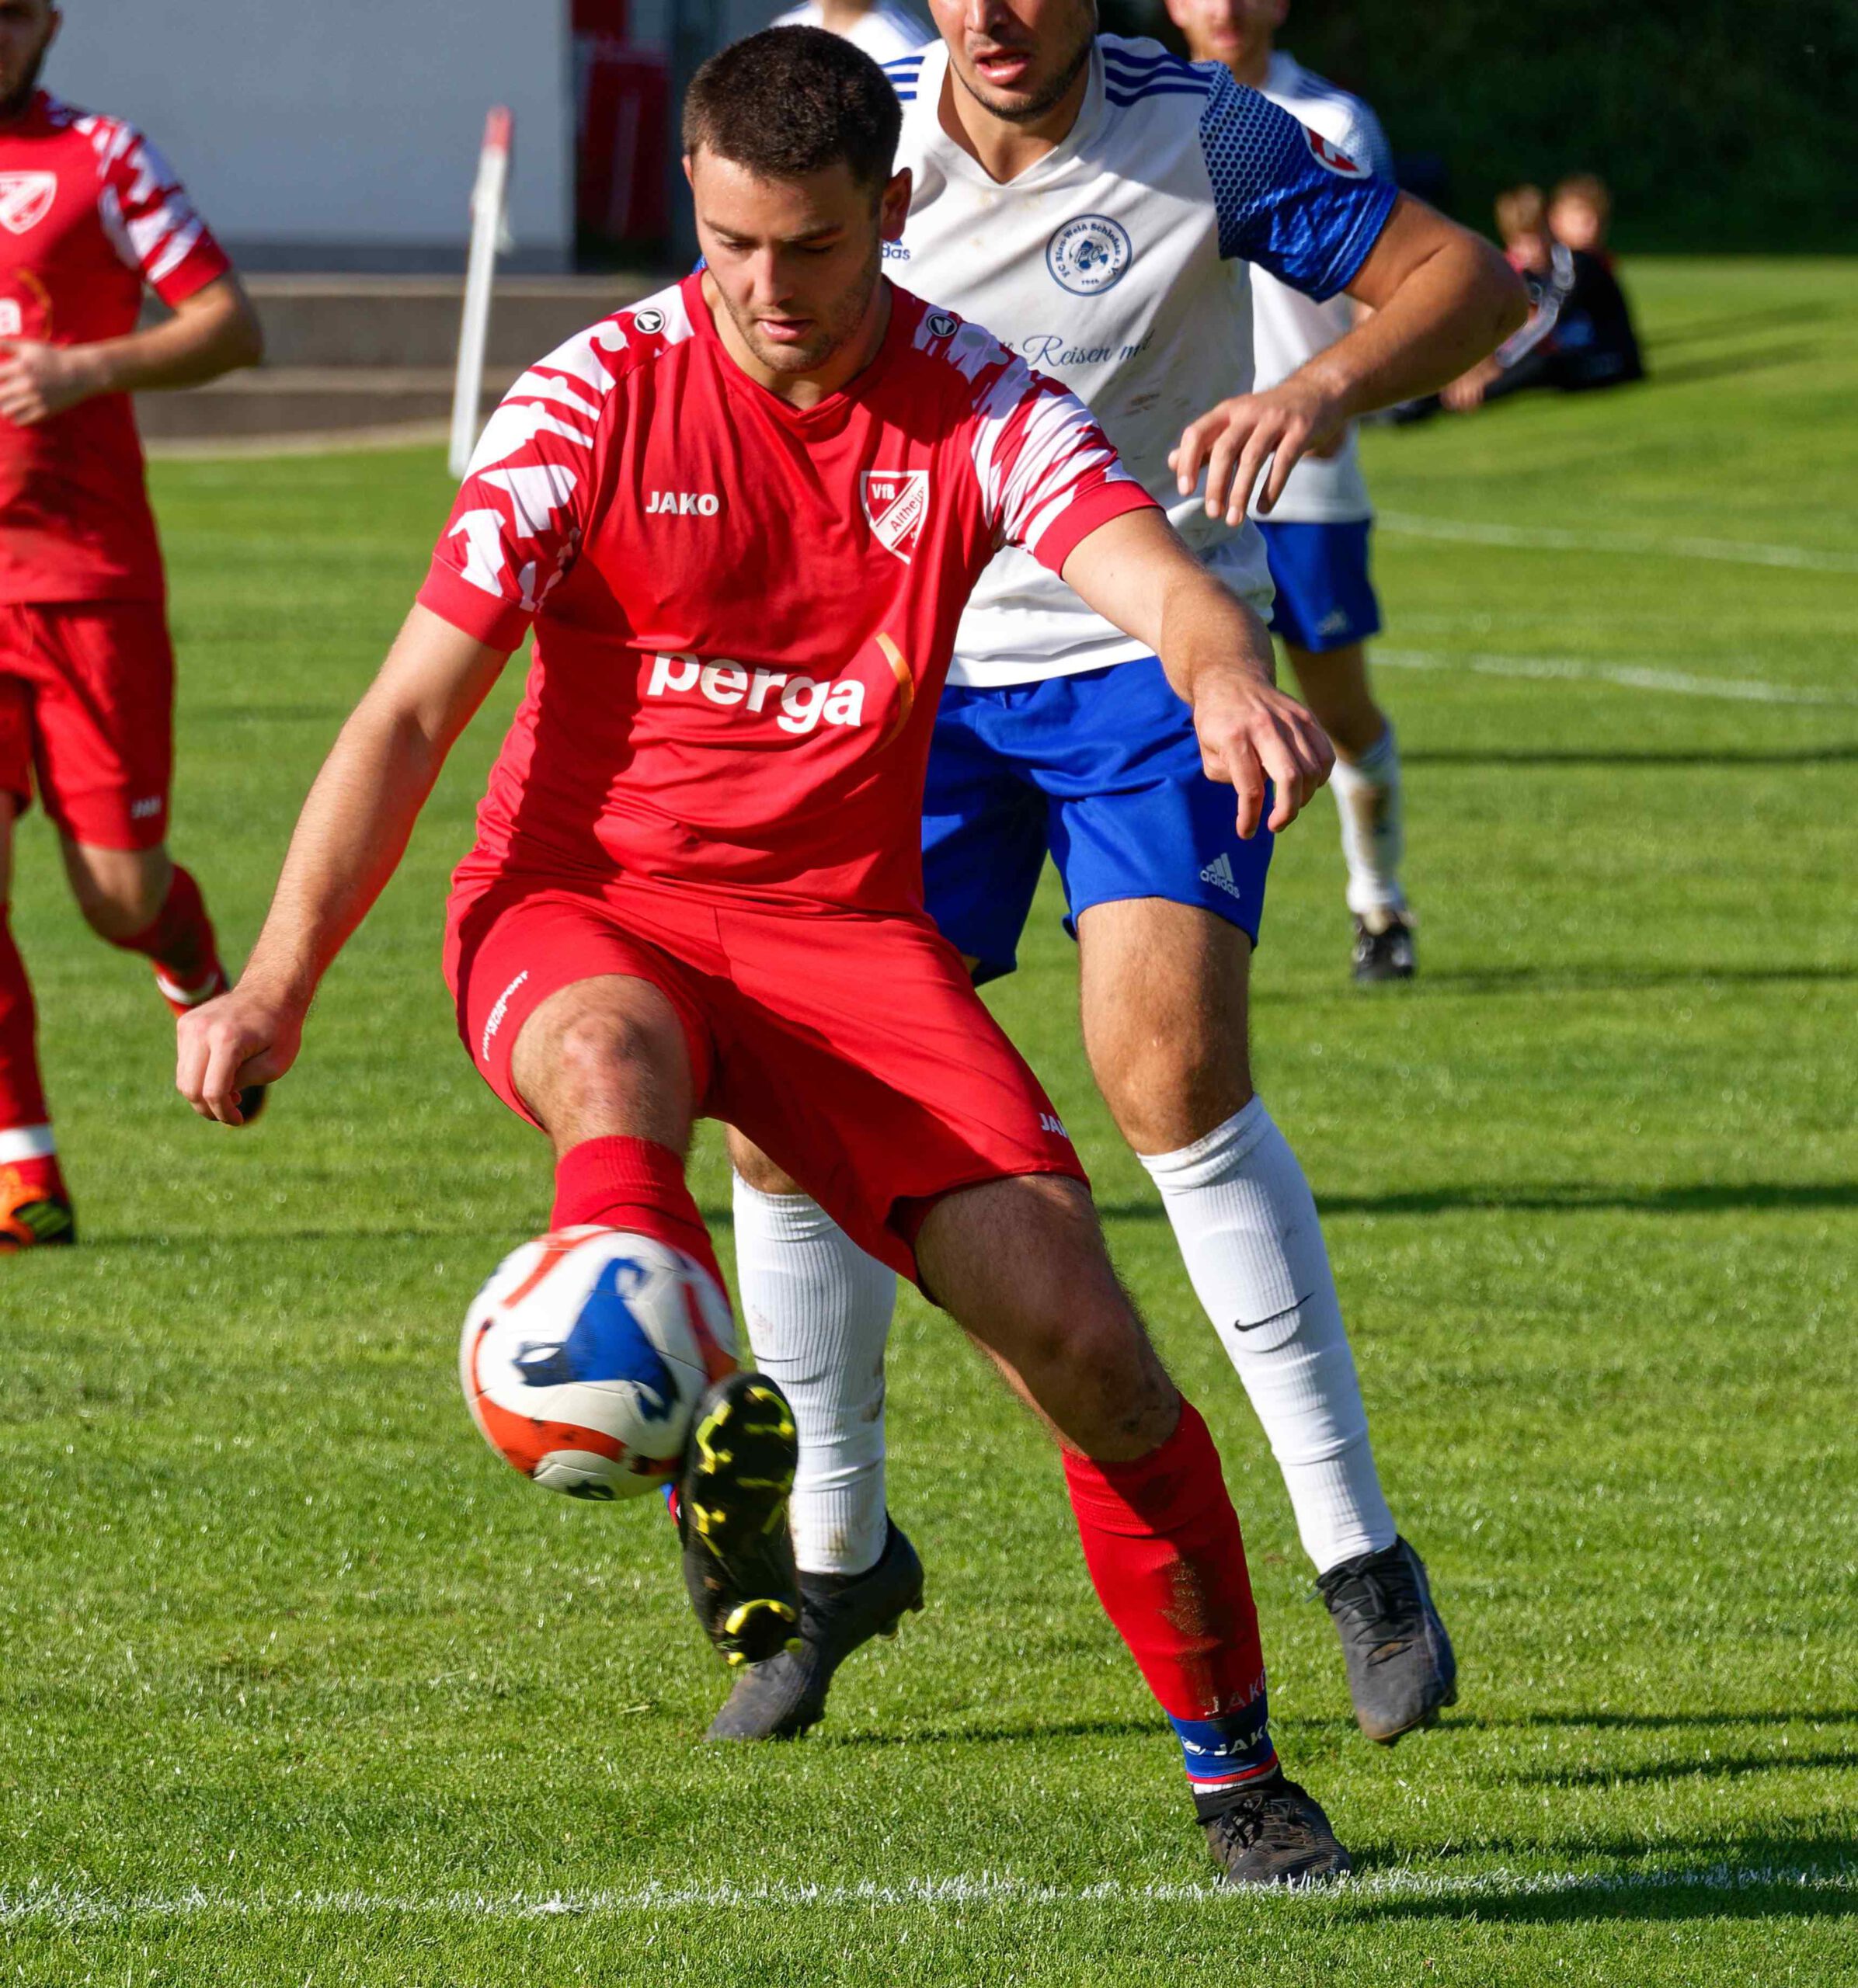 VfB Altheim – SpG Schloßau/Donebach 1:2 (0:1)